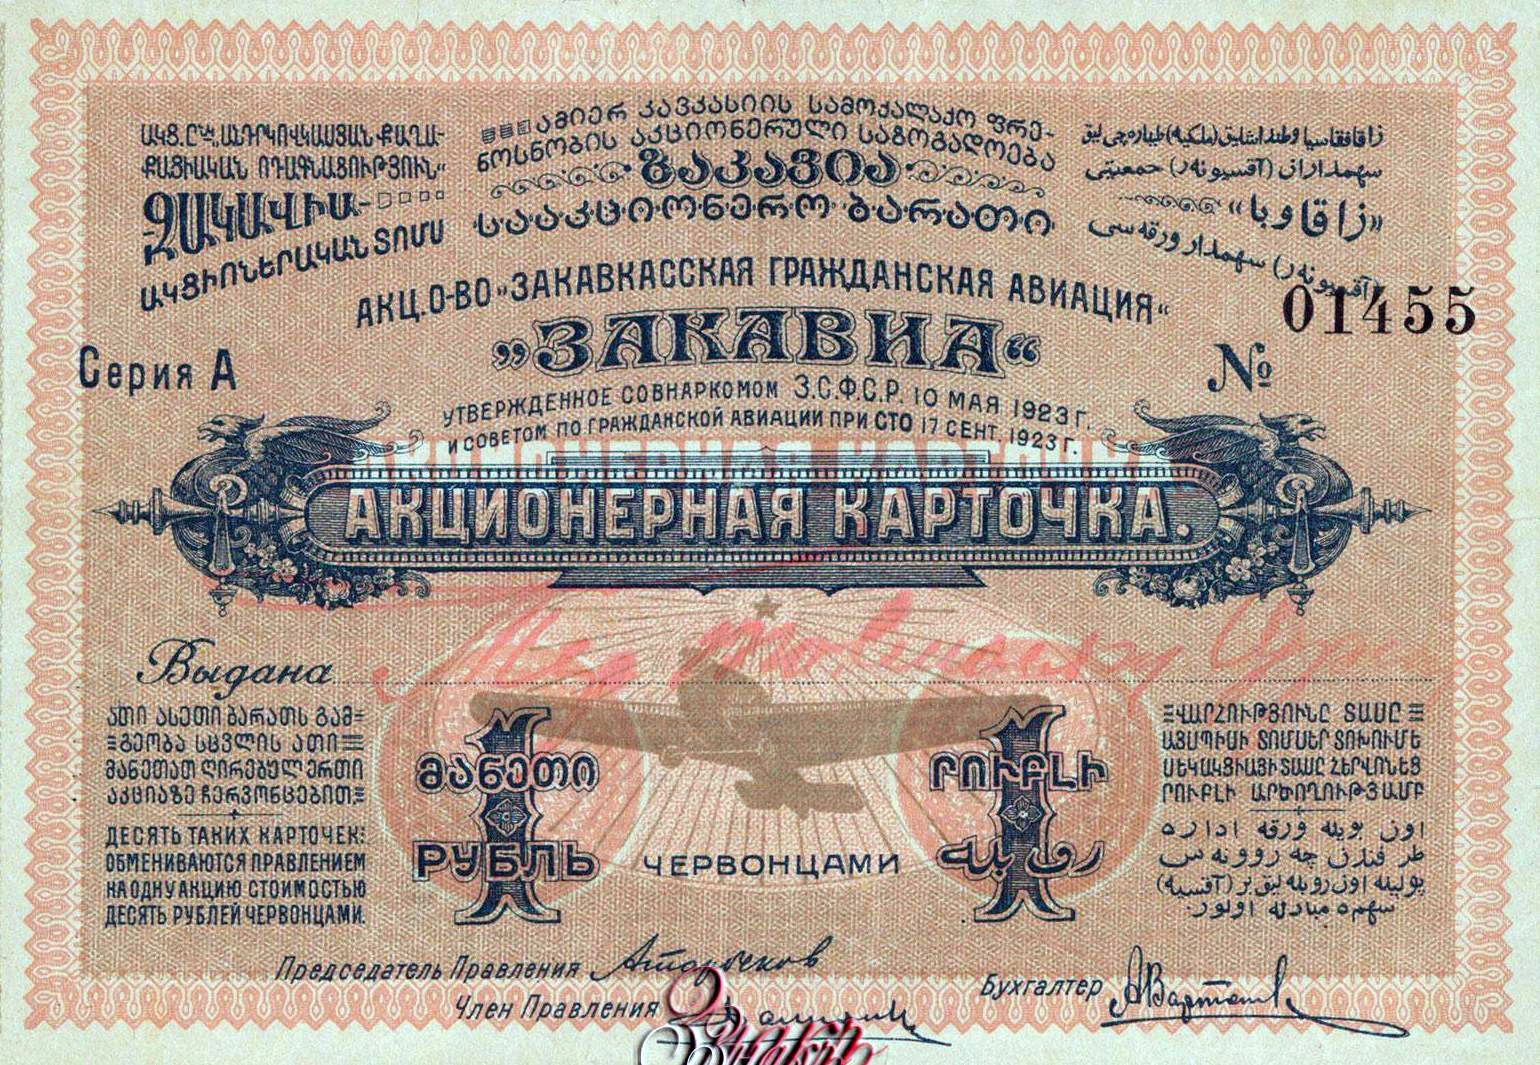 АО «Закавиа» Акционерная карточка.1923.